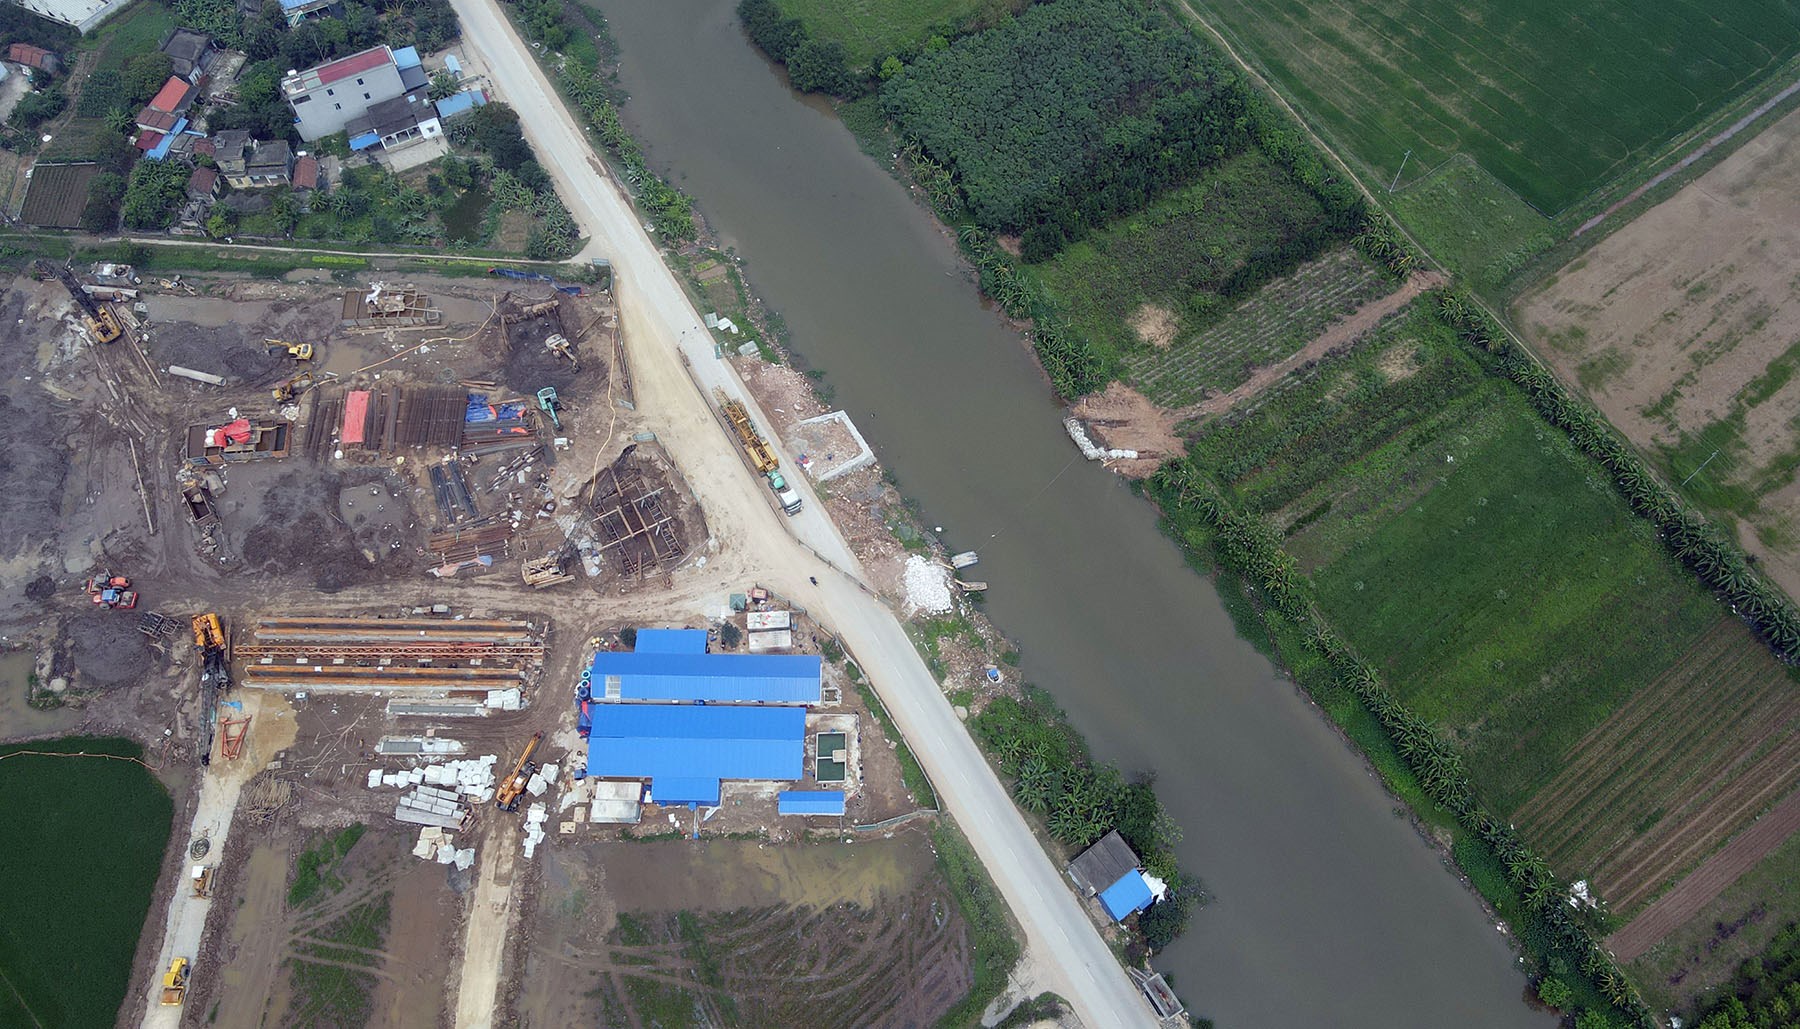 Hình ảnh đường Nam Định - Lạc Quần - Đường bộ ven biển sau 5 tháng khởi công